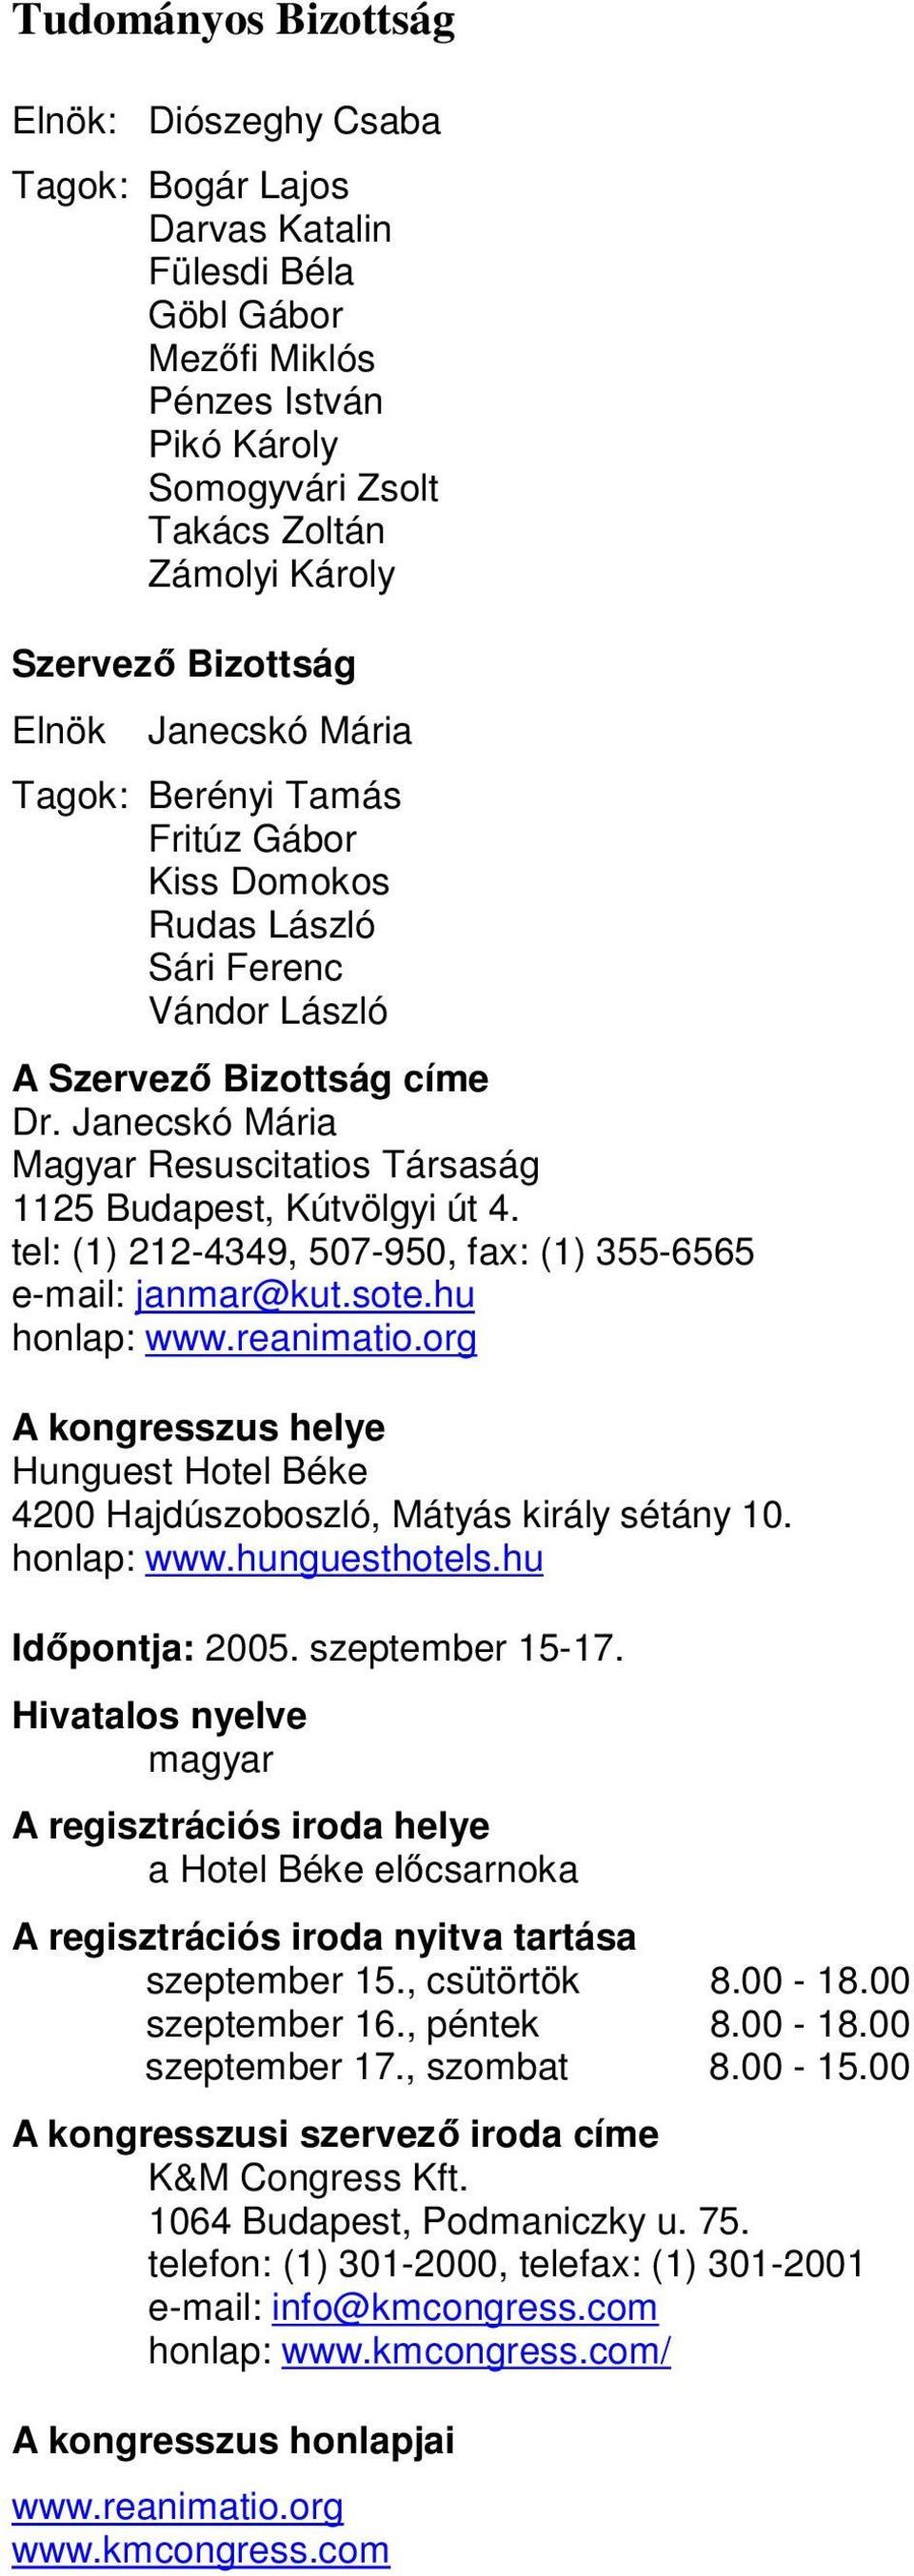 Janecskó Mária Magyar Resuscitatios Társaság 1125 Budapest, Kútvölgyi út 4. tel: (1) 212-4349, 507-950, fax: (1) 355-6565 e-mail: janmar@kut.sote.hu honlap: www.reanimatio.